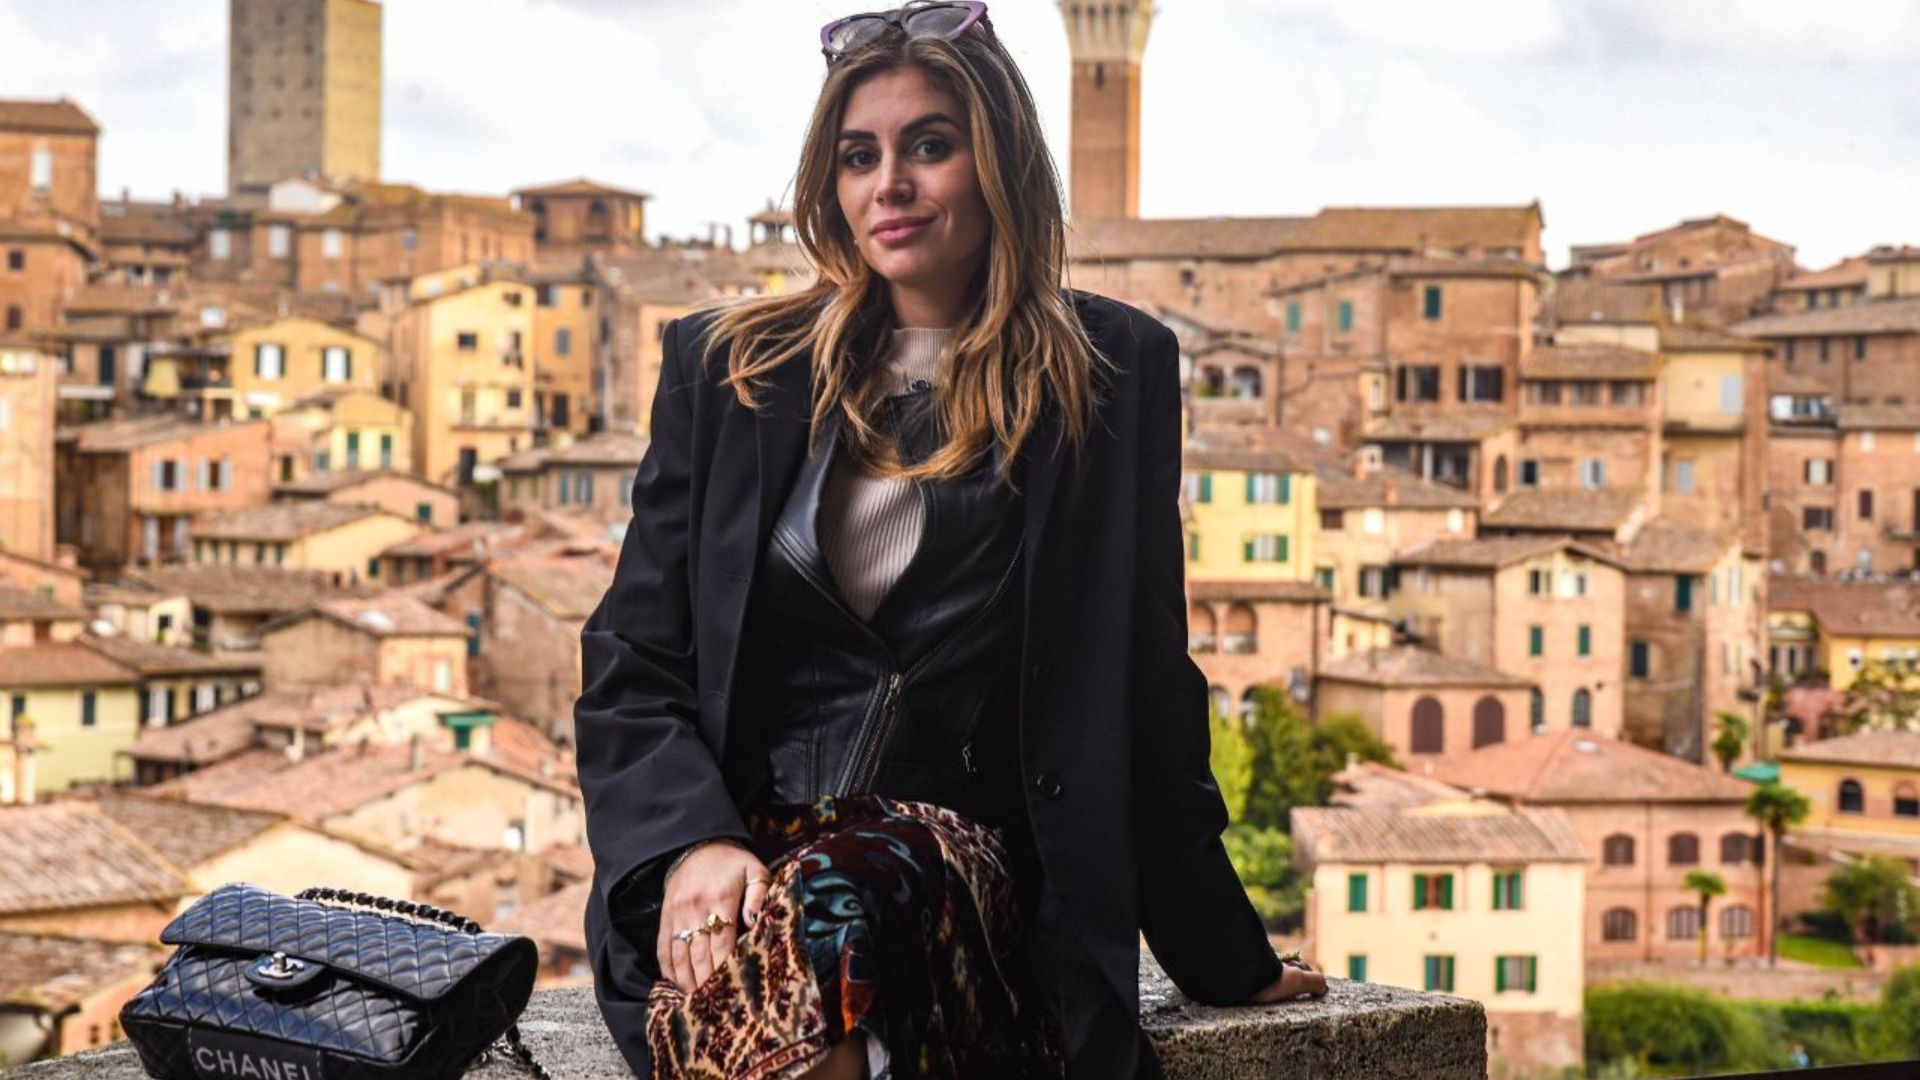 Découvrez les beautés du centre historique de Siena et immortalisez vos souvenirs avec une séance photo professionnelle